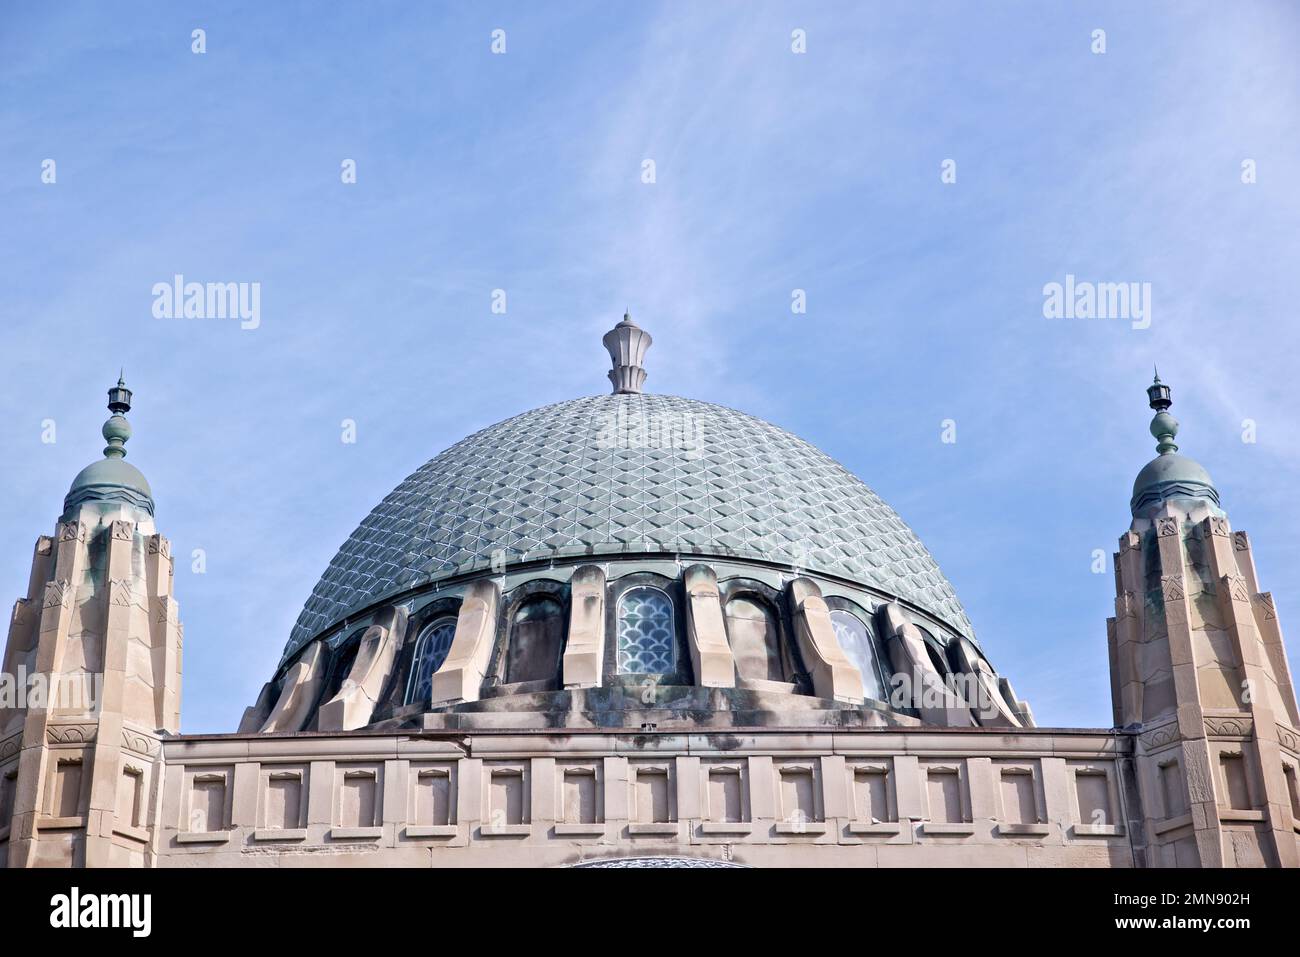 Das Gebäude im gotischen Stil ist von außen mit einer architektonischen Kuppel versehen Stockfoto